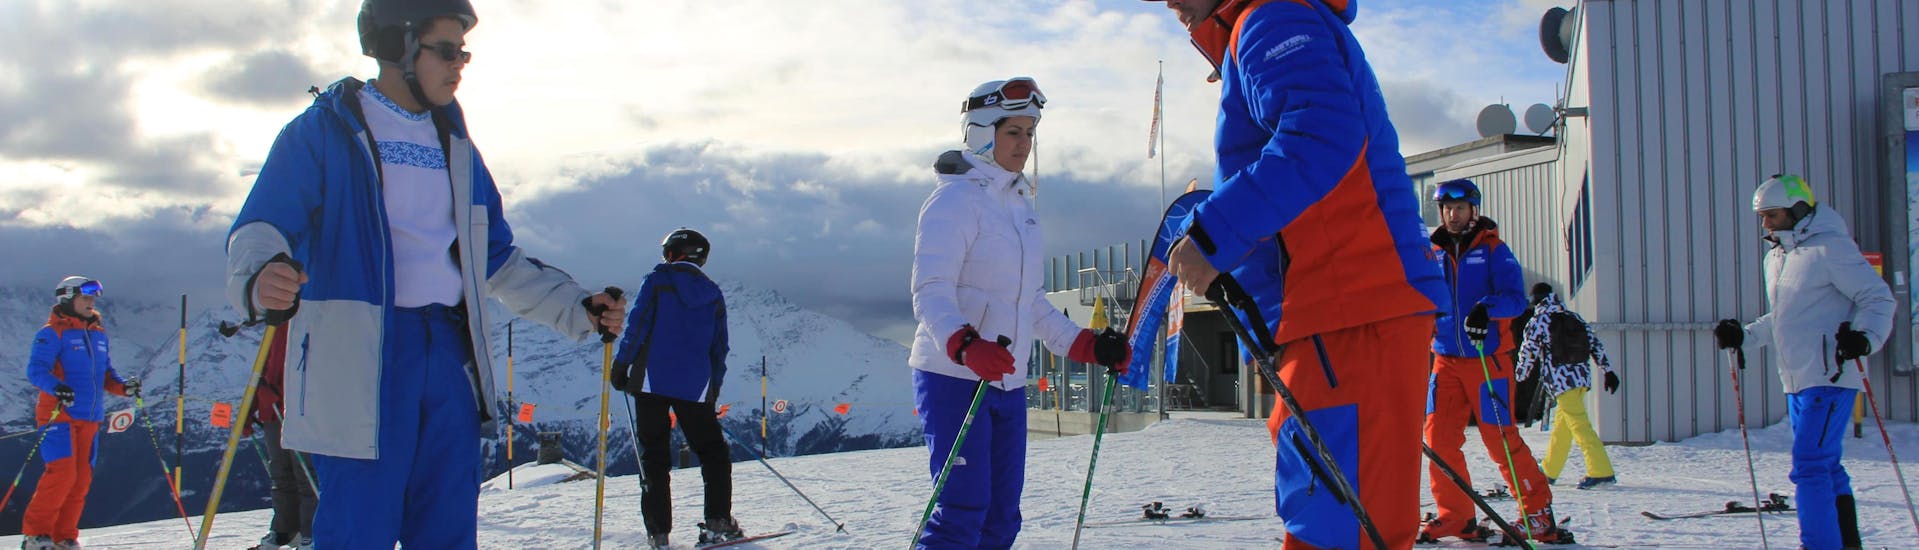 Skikurs für Teens & Erwachsene aller Levels mit Skischule Tzoum'Évasion La Tzoumaz.